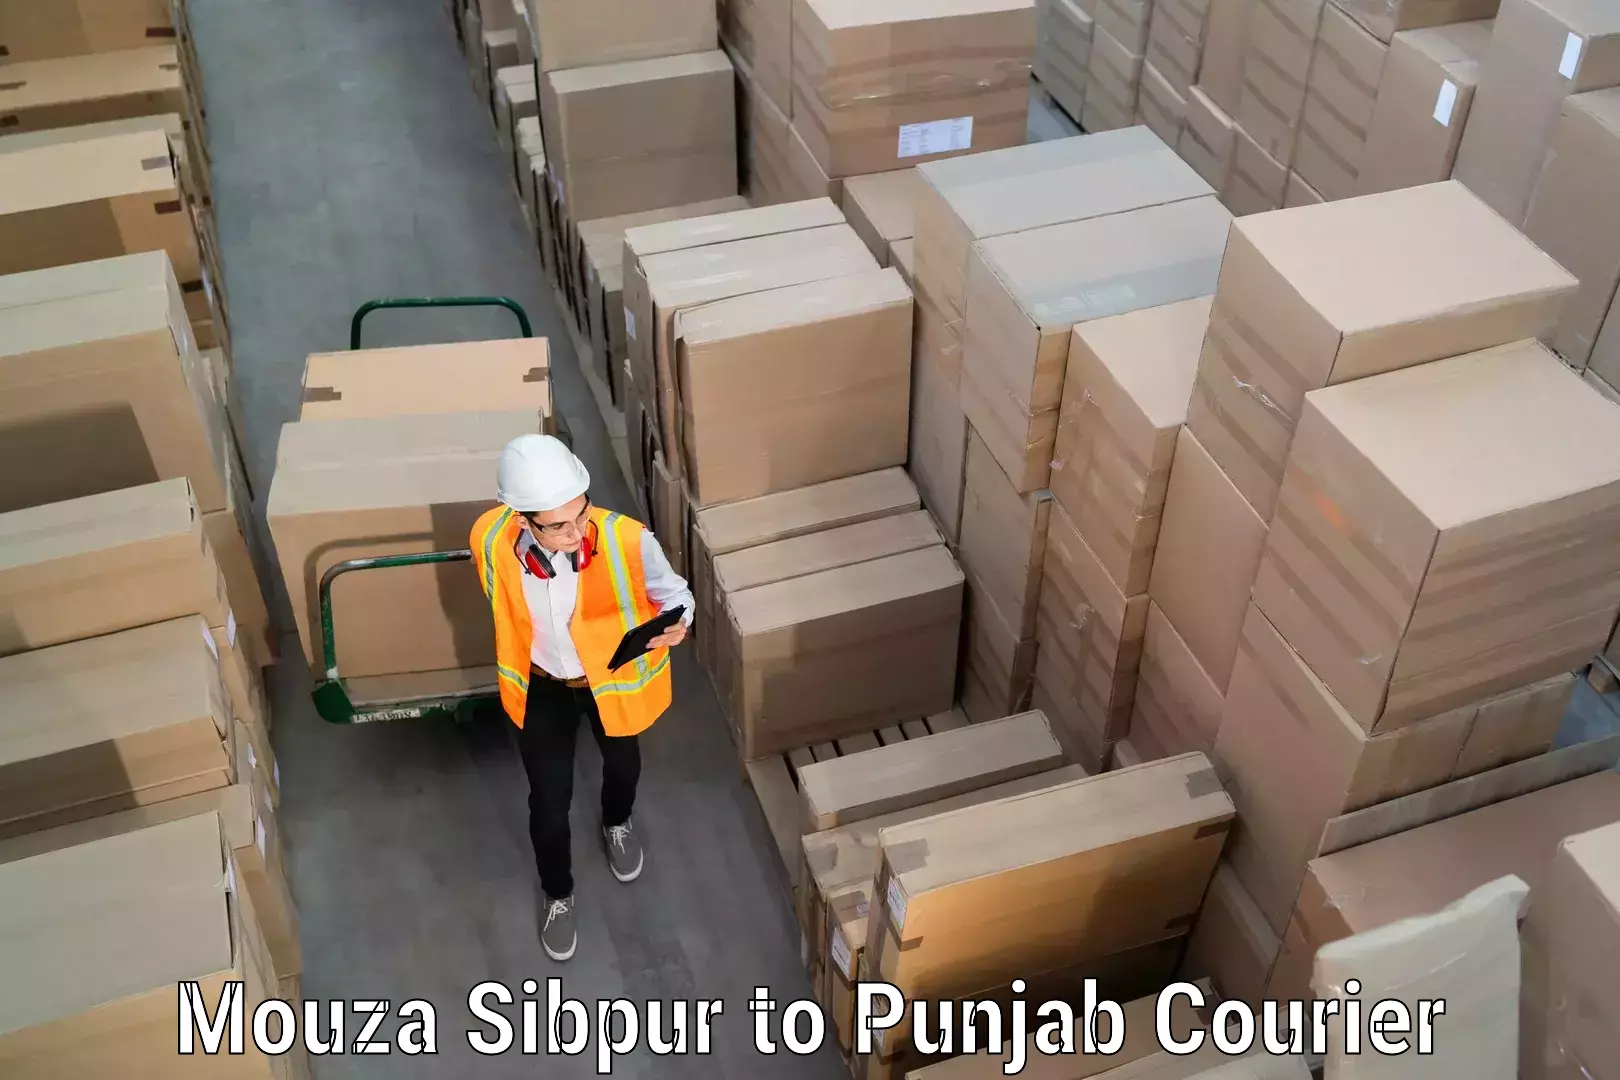 Furniture moving experts Mouza Sibpur to Punjab